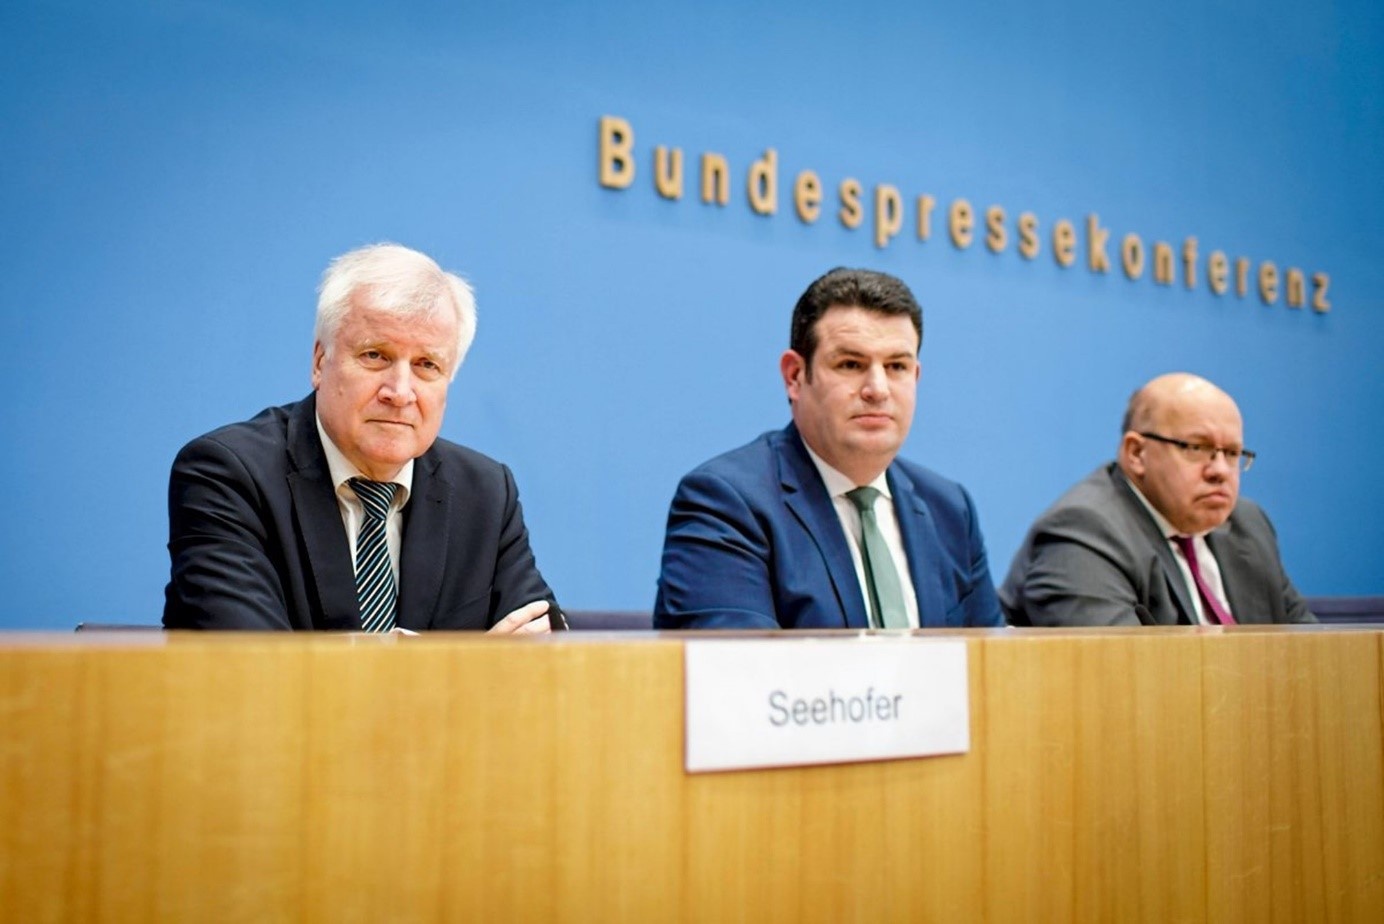 Новий закон презентували одразу три німецьких міністри: (зліва направо) – Горст Зеегофер, Хубертус Хайль та Петер Альтмайєр